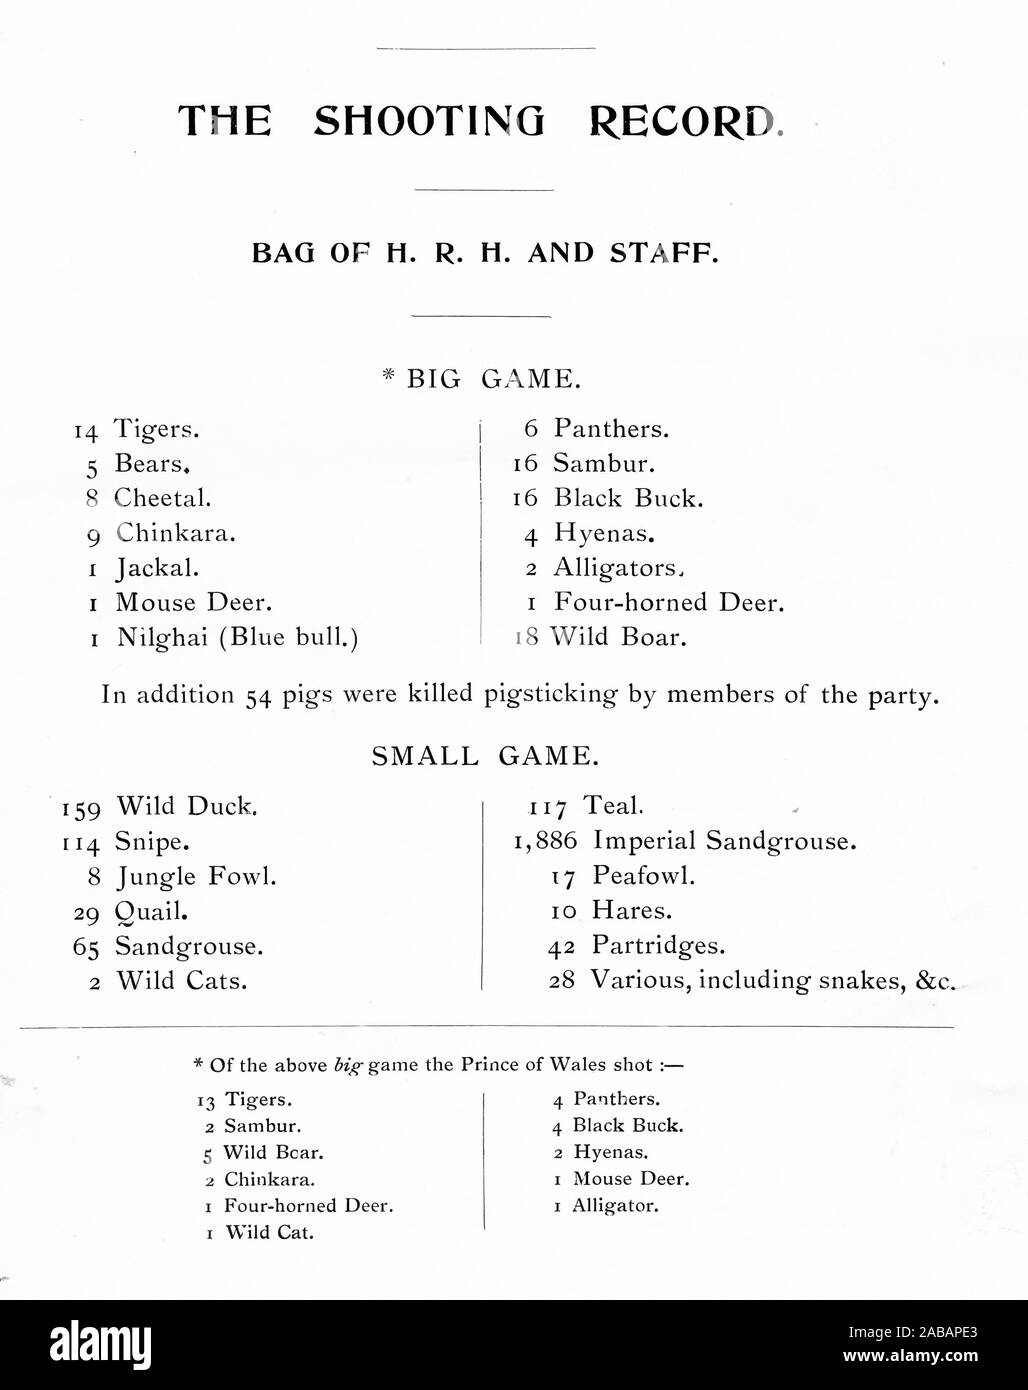 Elenco ufficiale del gioco di colpo da Sua Altezza il Principe di Galles (successivamente George V) e il suo staff per la sua visita ufficiale in India nel 1906. Foto Stock